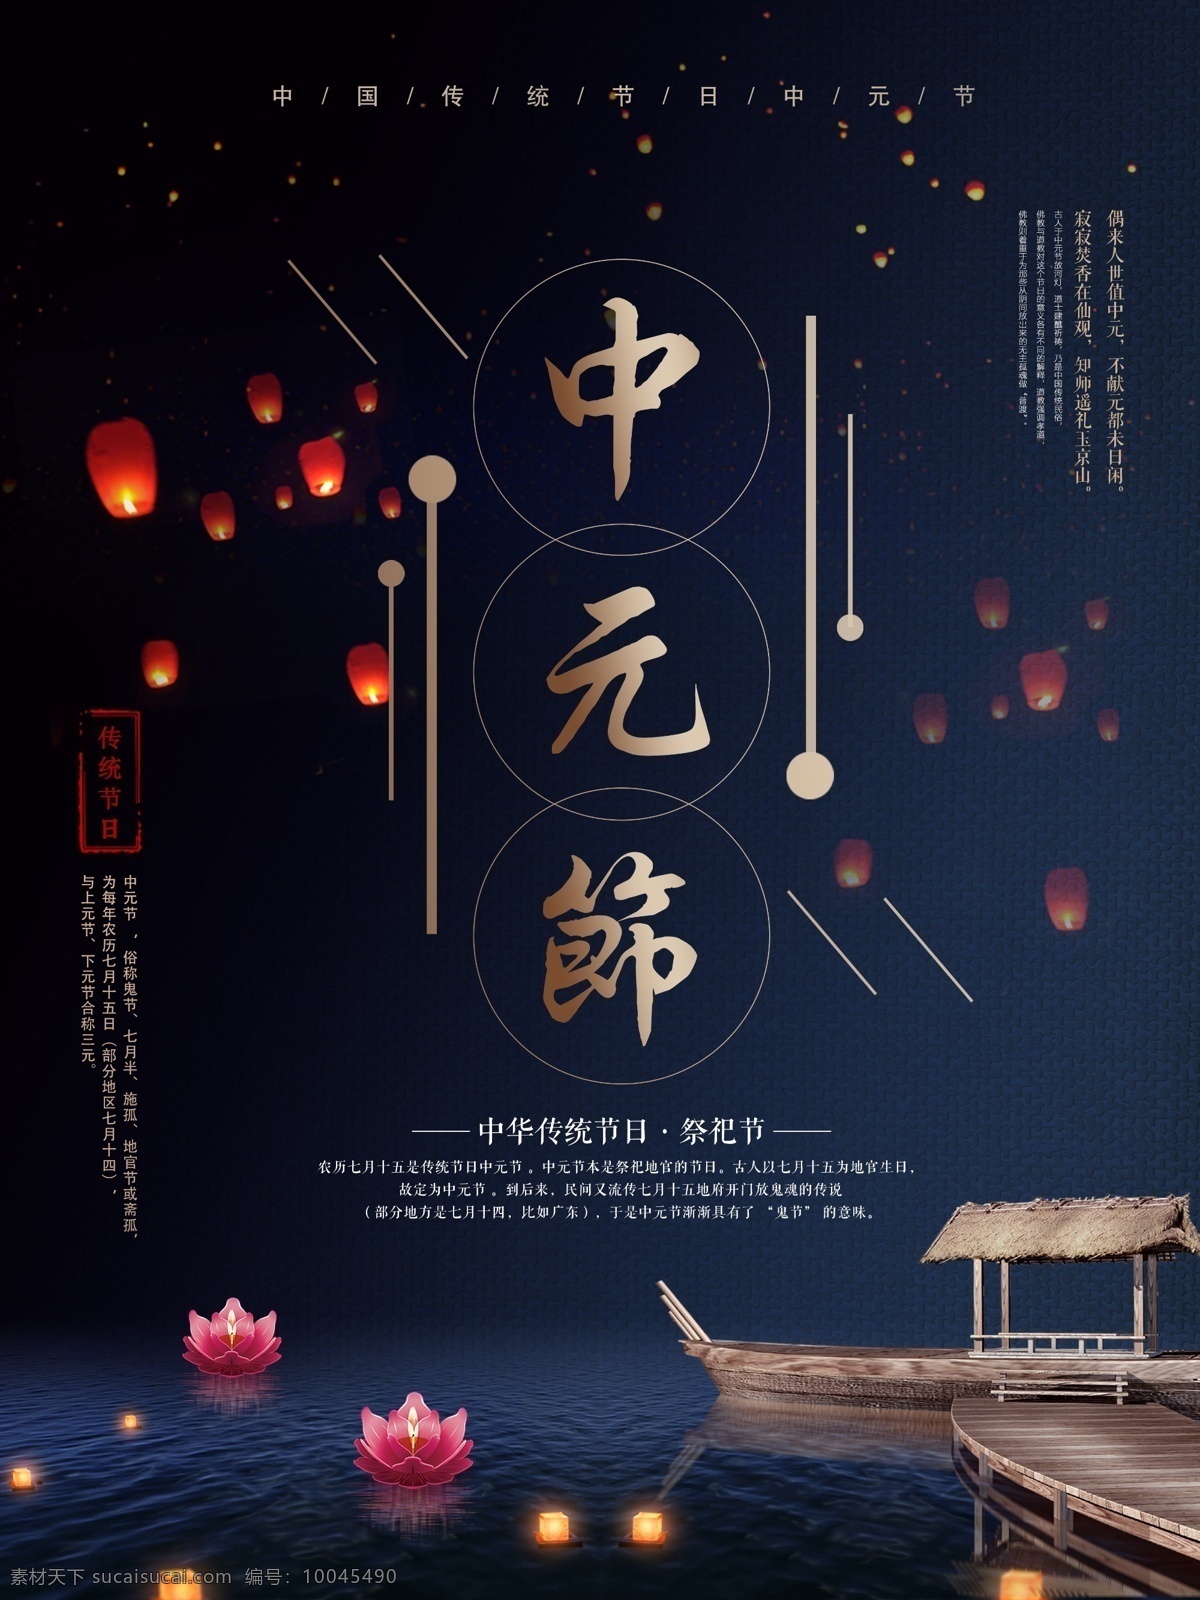 中国 传统节日 中元节 节日 宣传海报 节日海报 中国风 河流 船只 放水灯 孔明灯 鬼节